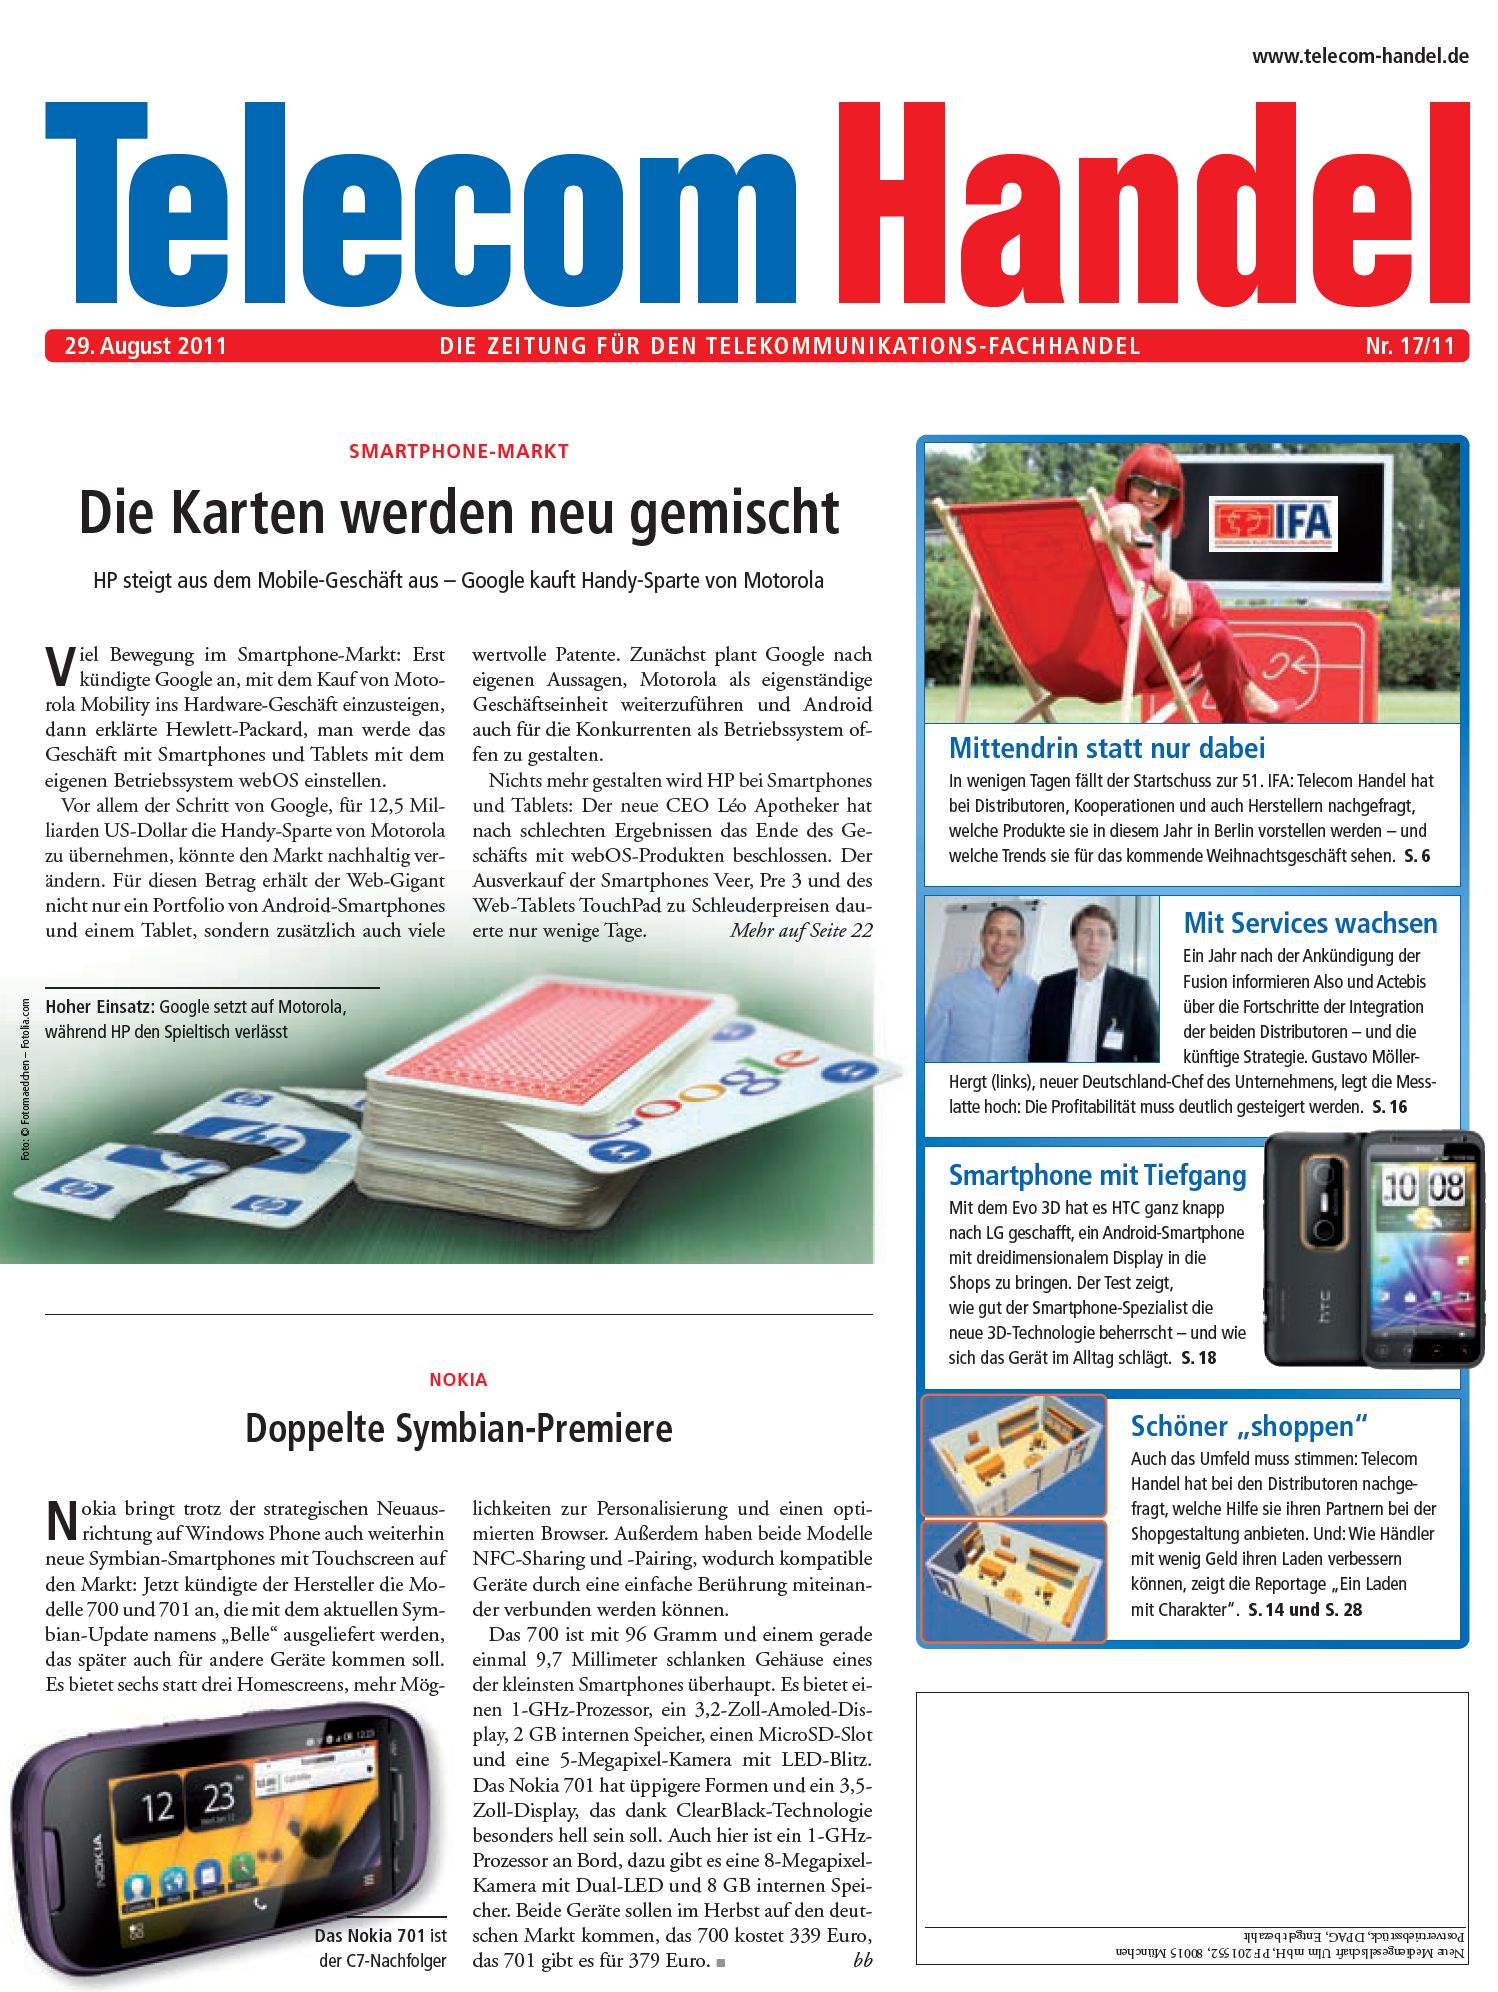 Telecom Handel Ausgabe 17/2011